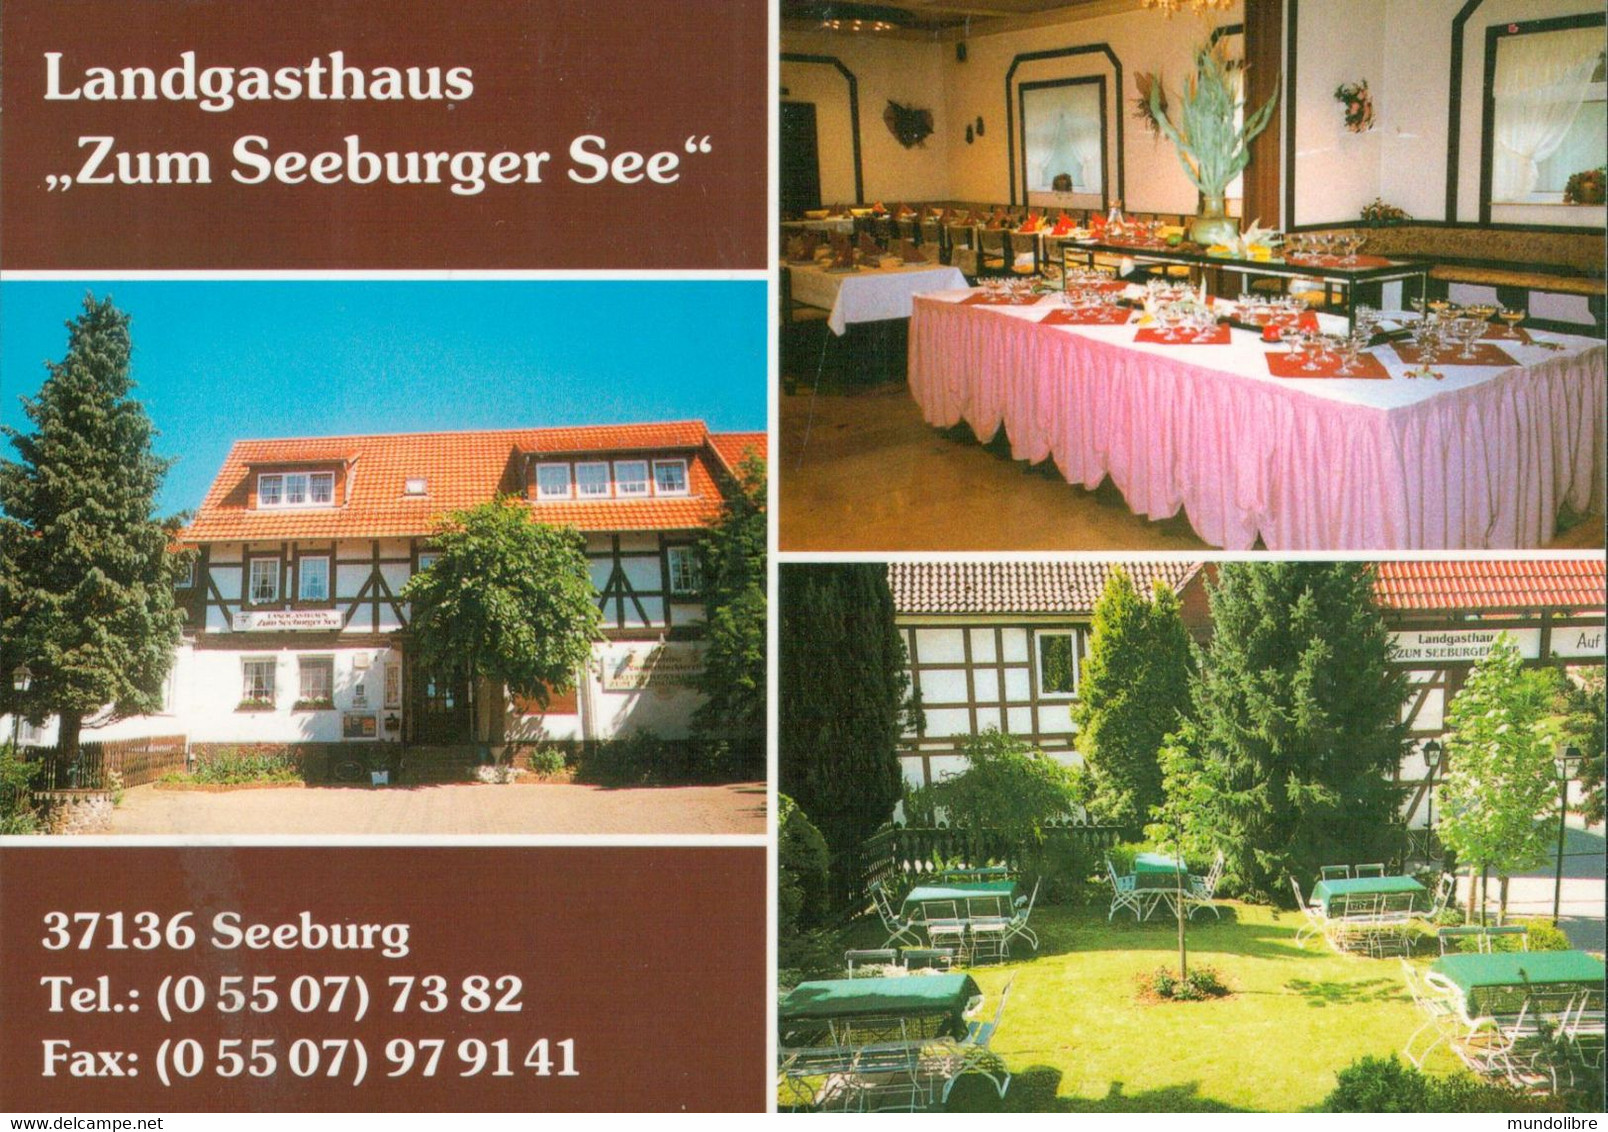 Landgasthof ZUM SEEBURGER SEE - Seeburg - Seeburg